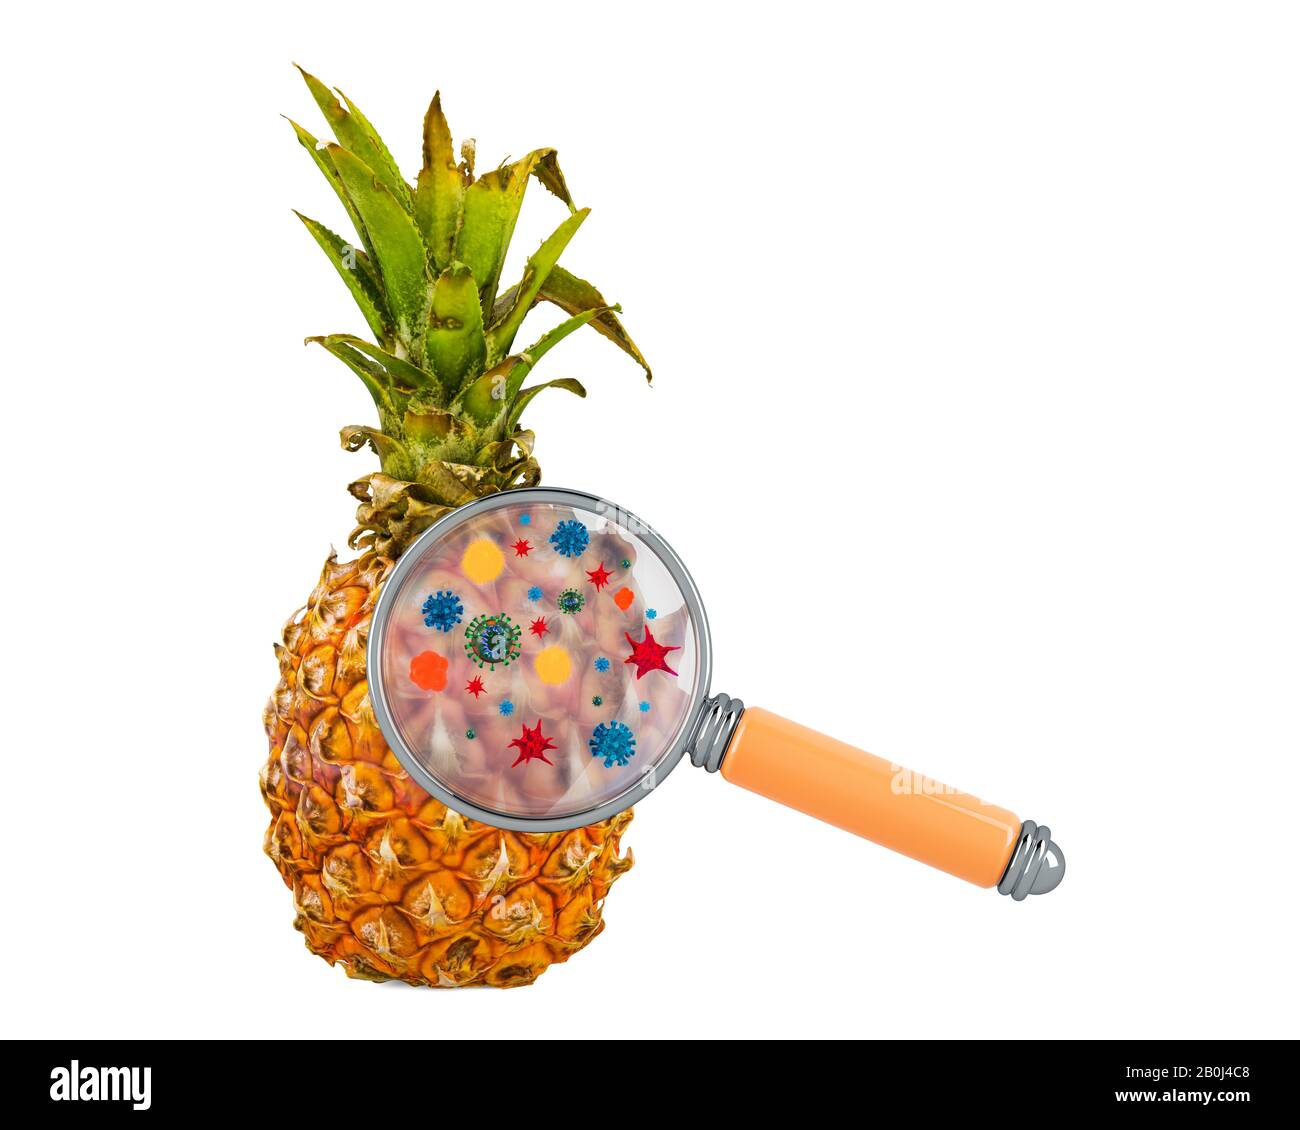 Ananas aux germes, microbes ou virus sous loupe, rendu tridimensionnel isolé sur fond blanc Banque D'Images